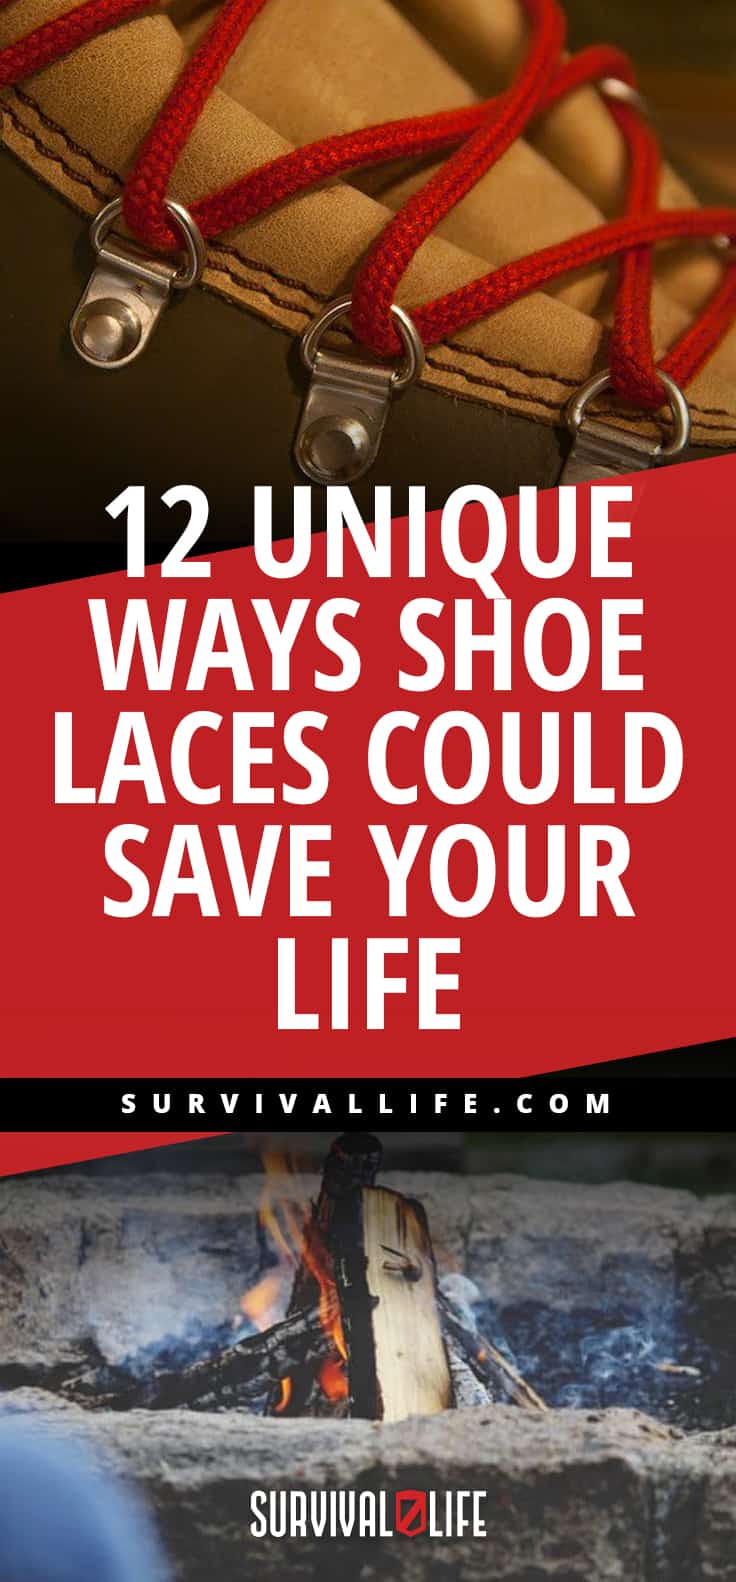 12 Unique Ways Shoe Laces Could Save Your Life